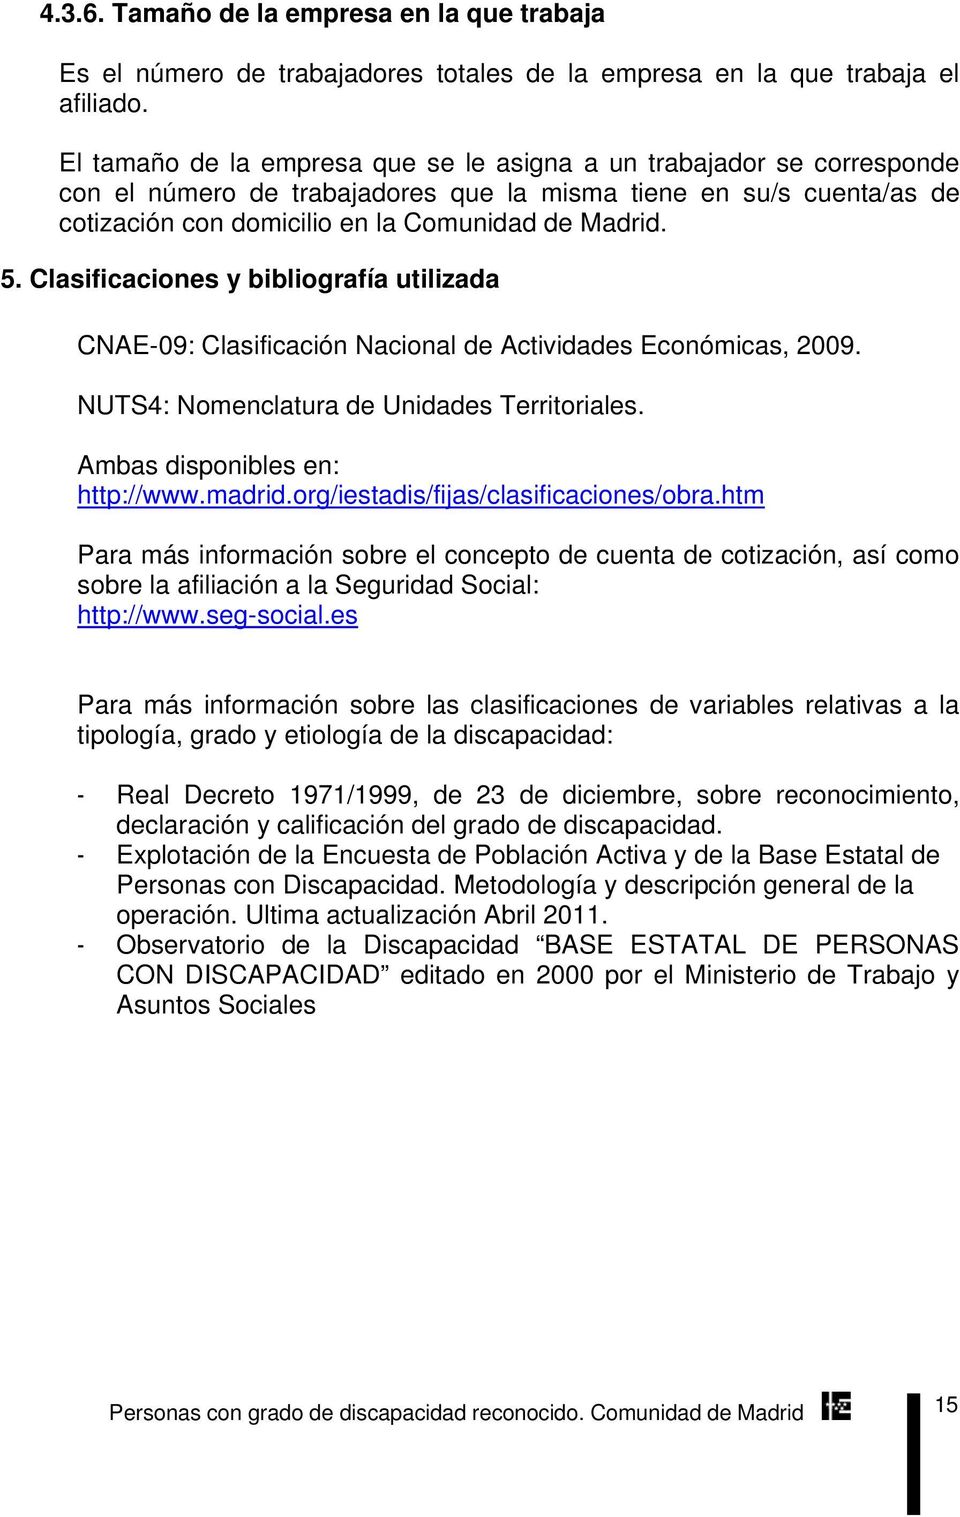 Clasificaciones y bibliografía utilizada CNAE-09: Clasificación Nacional de Actividades Económicas, 2009. NUTS4: Nomenclatura de Unidades Territoriales. Ambas disponibles en: http://www.madrid.